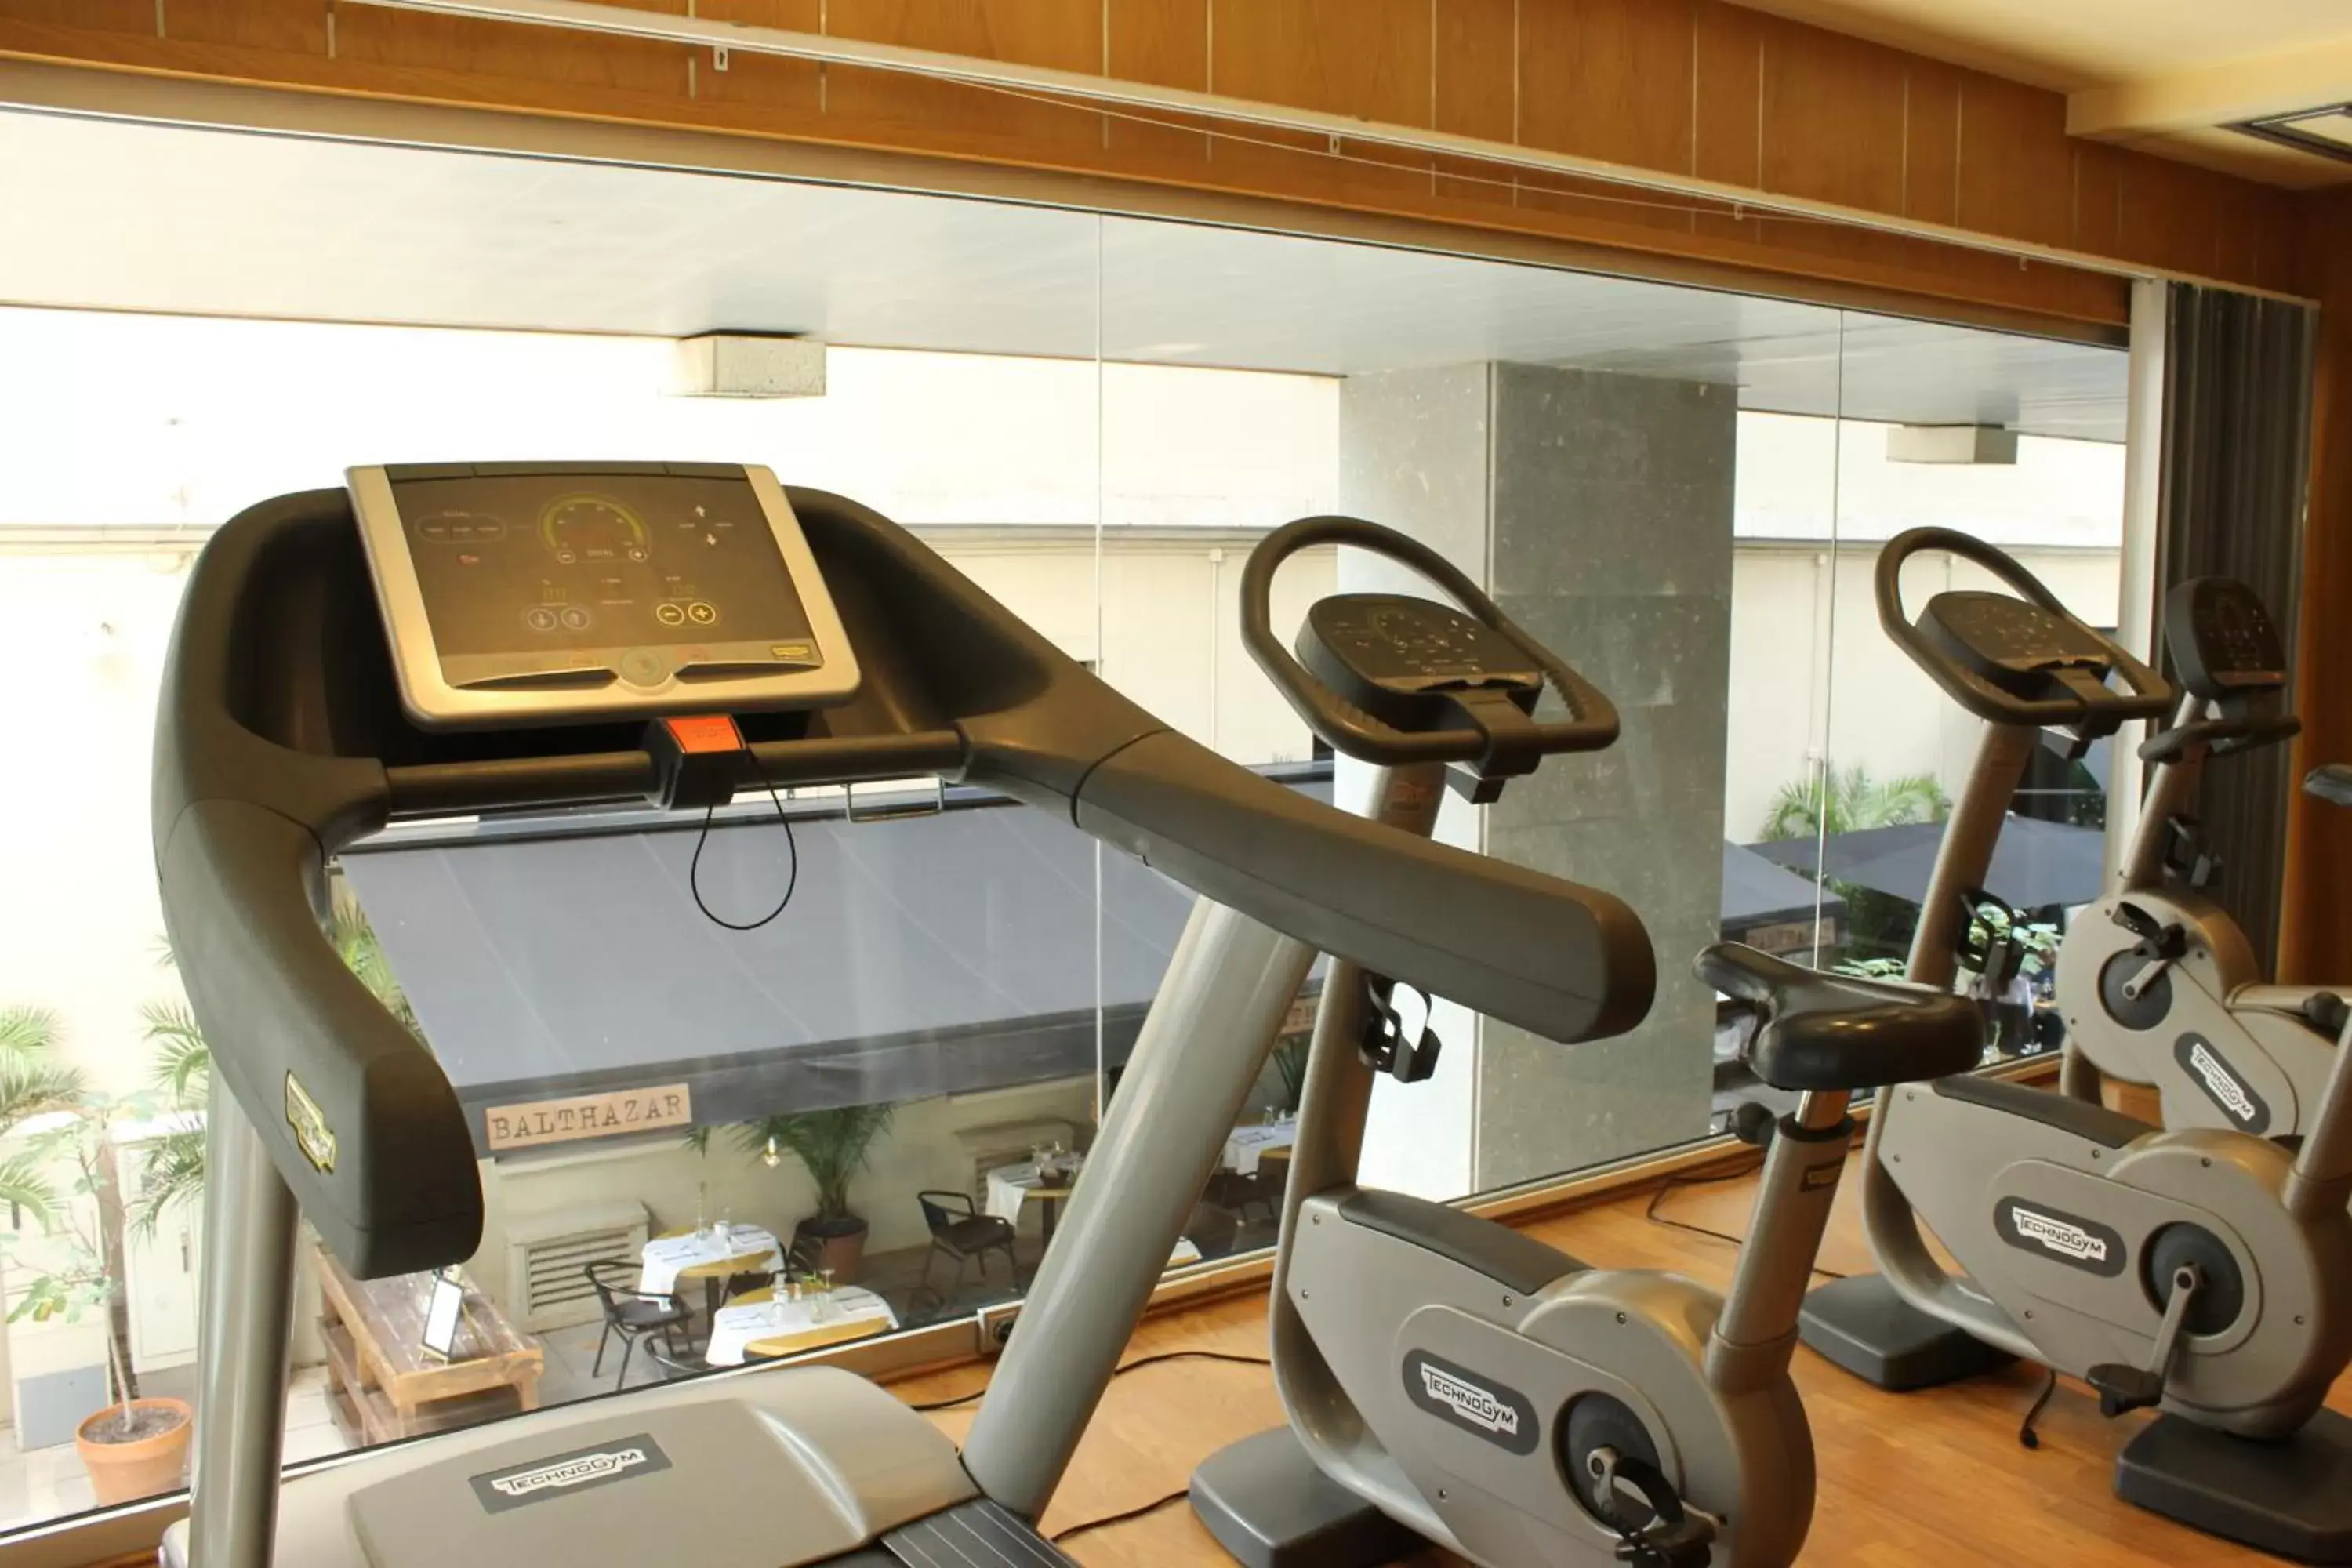 Fitness centre/facilities, Fitness Center/Facilities in Evenia Rossello